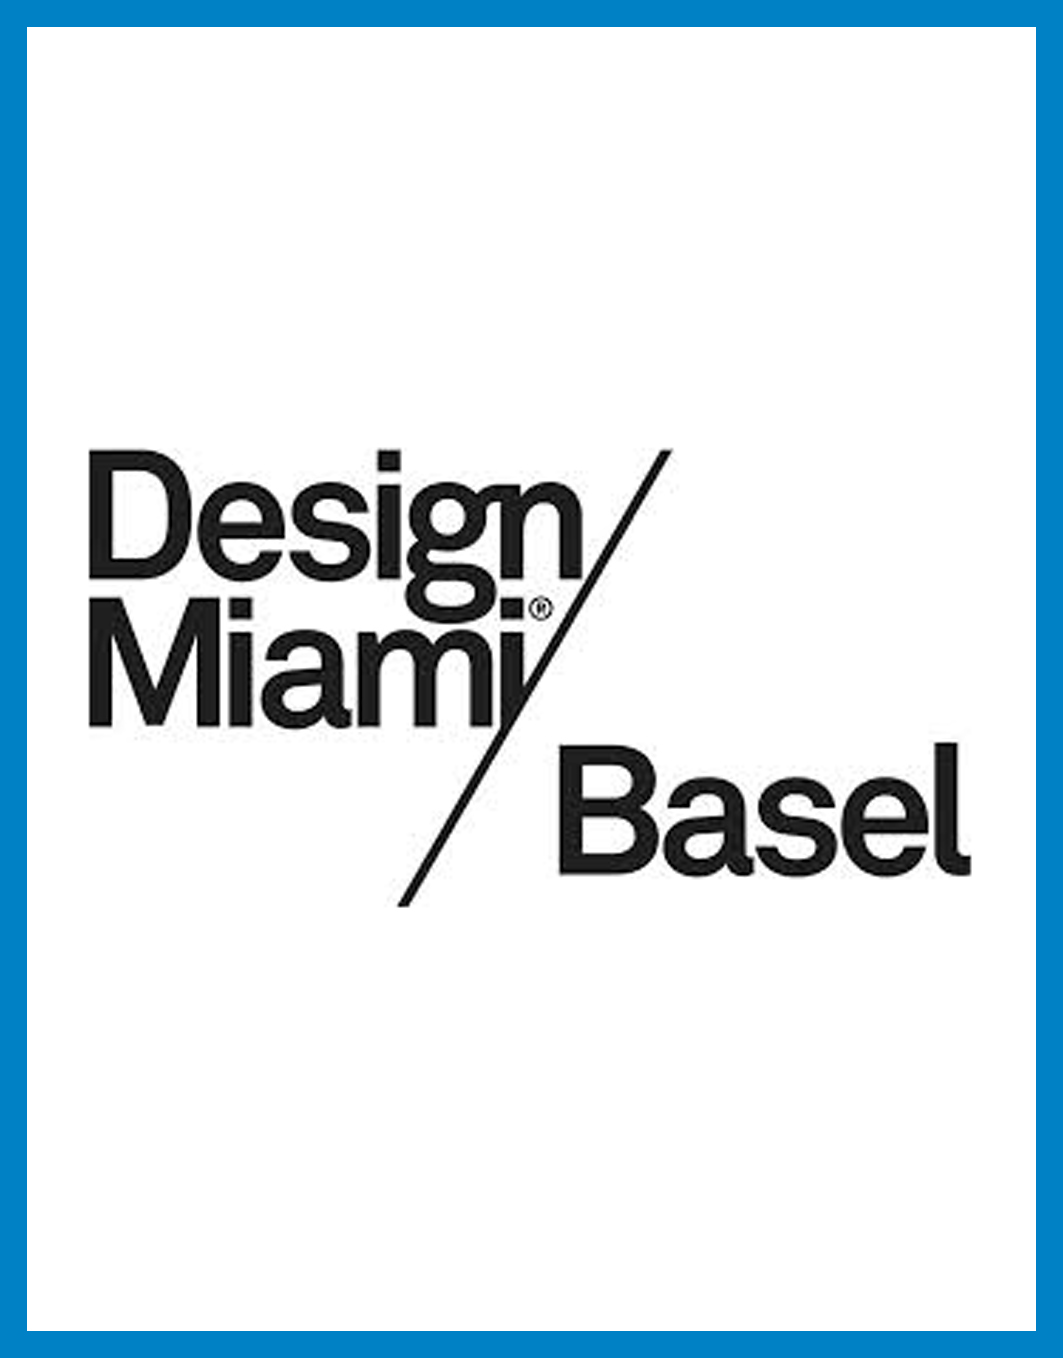  - Design Miami / Basel 2015